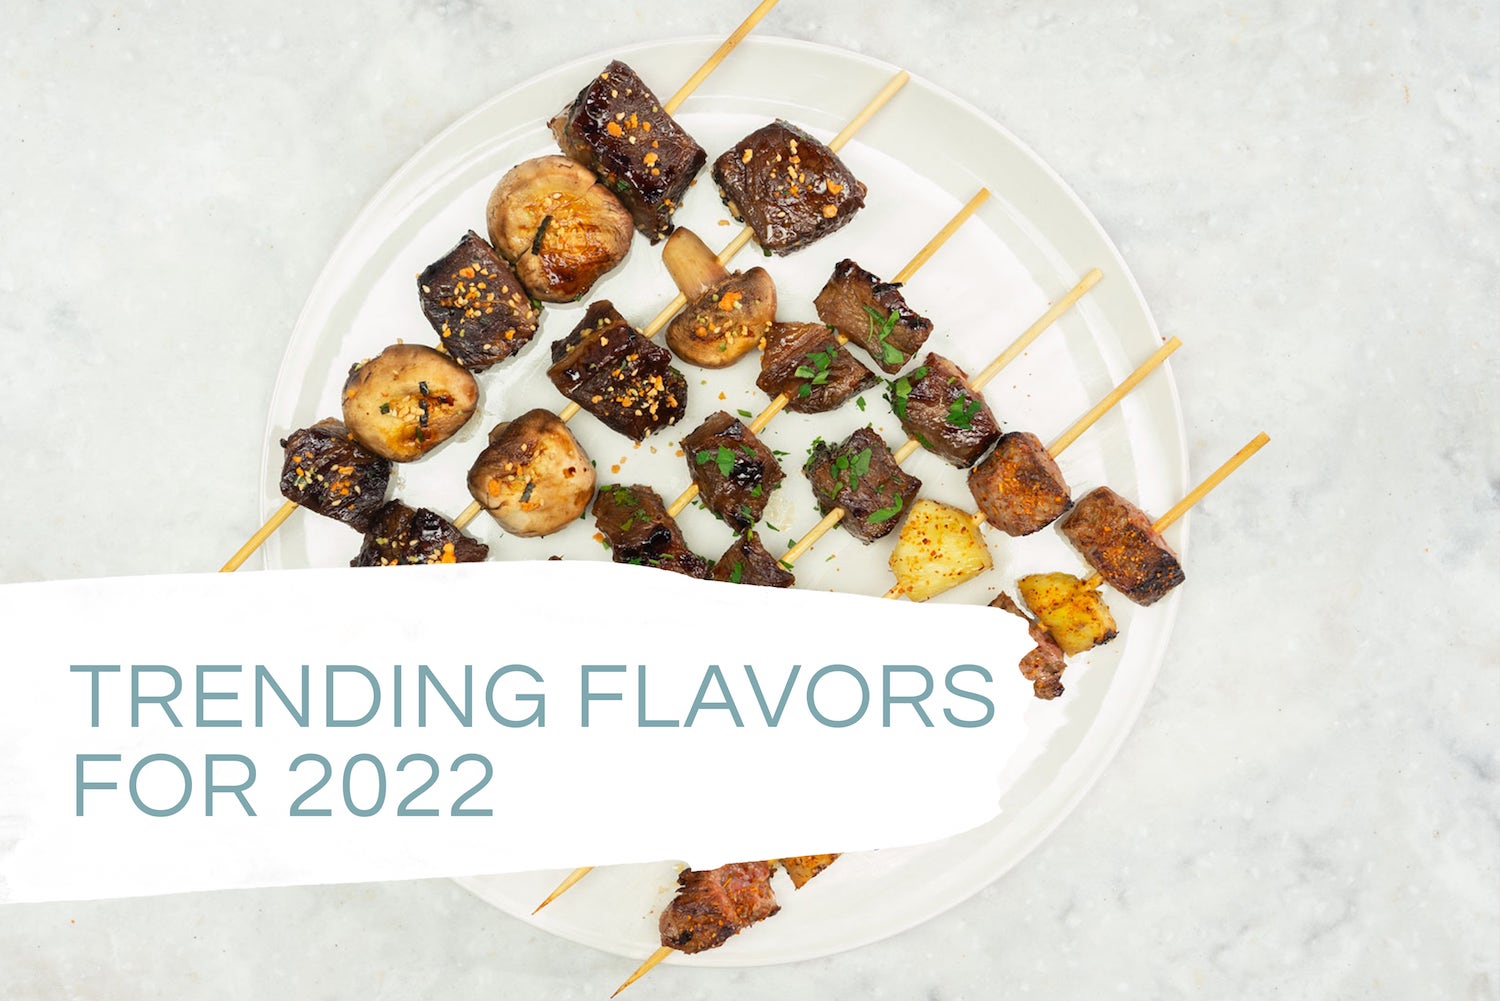 trending flavors for 2022 - beef steak seasonings